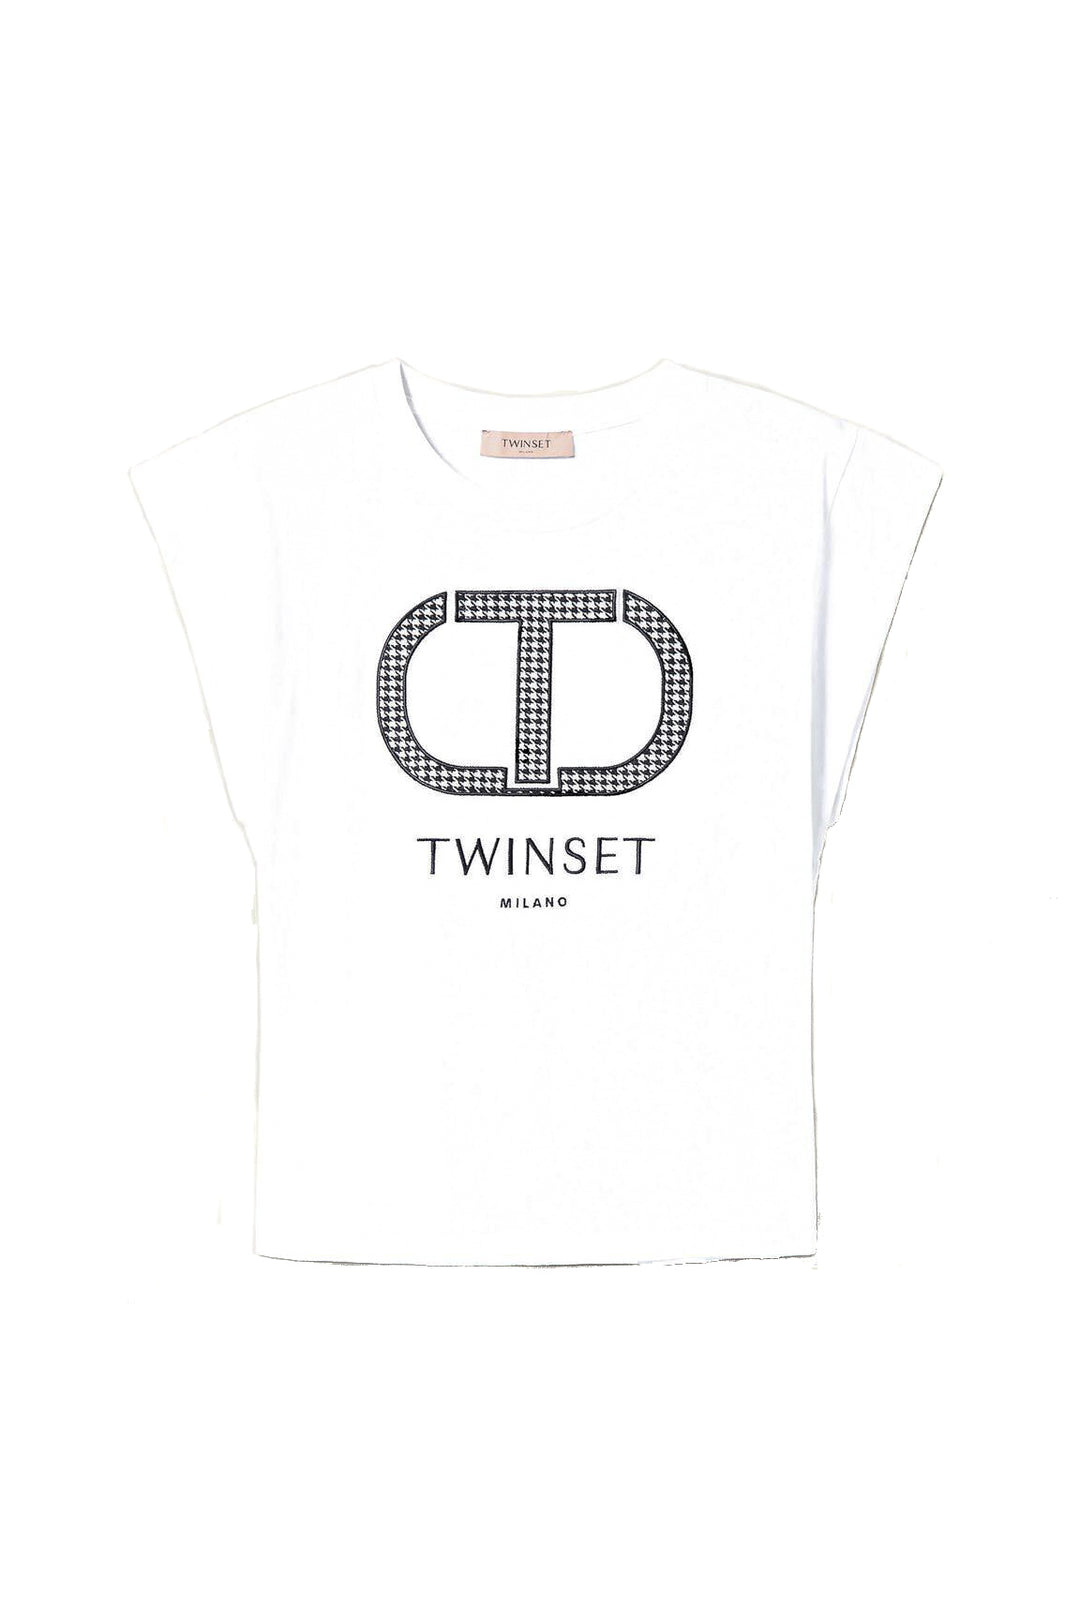 TWINSET T-shirt bianca con logo pied de poule - Mancinelli 1954